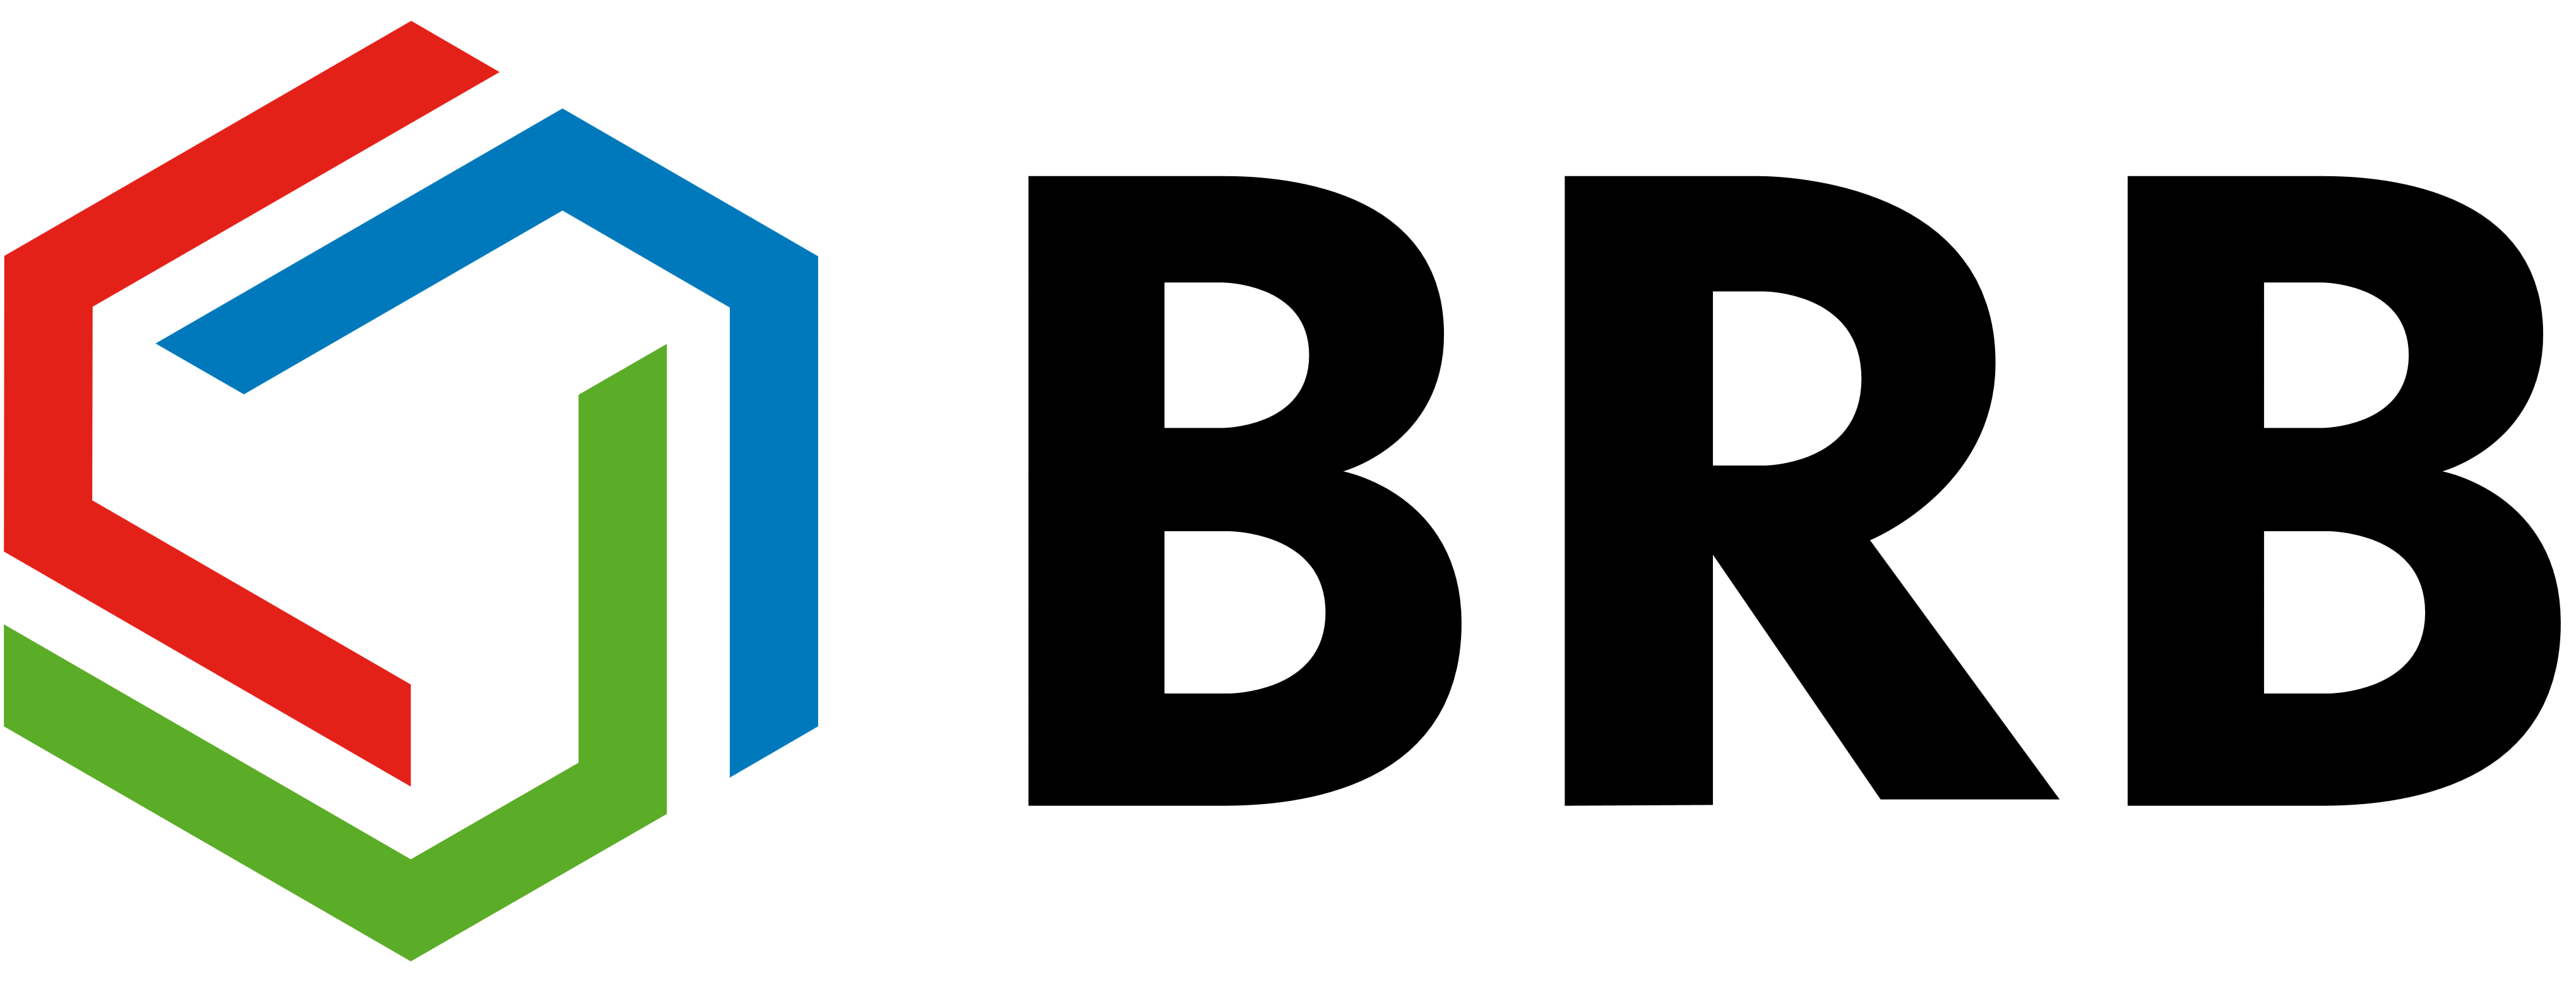 BRB Logo - BRB – Logos Download